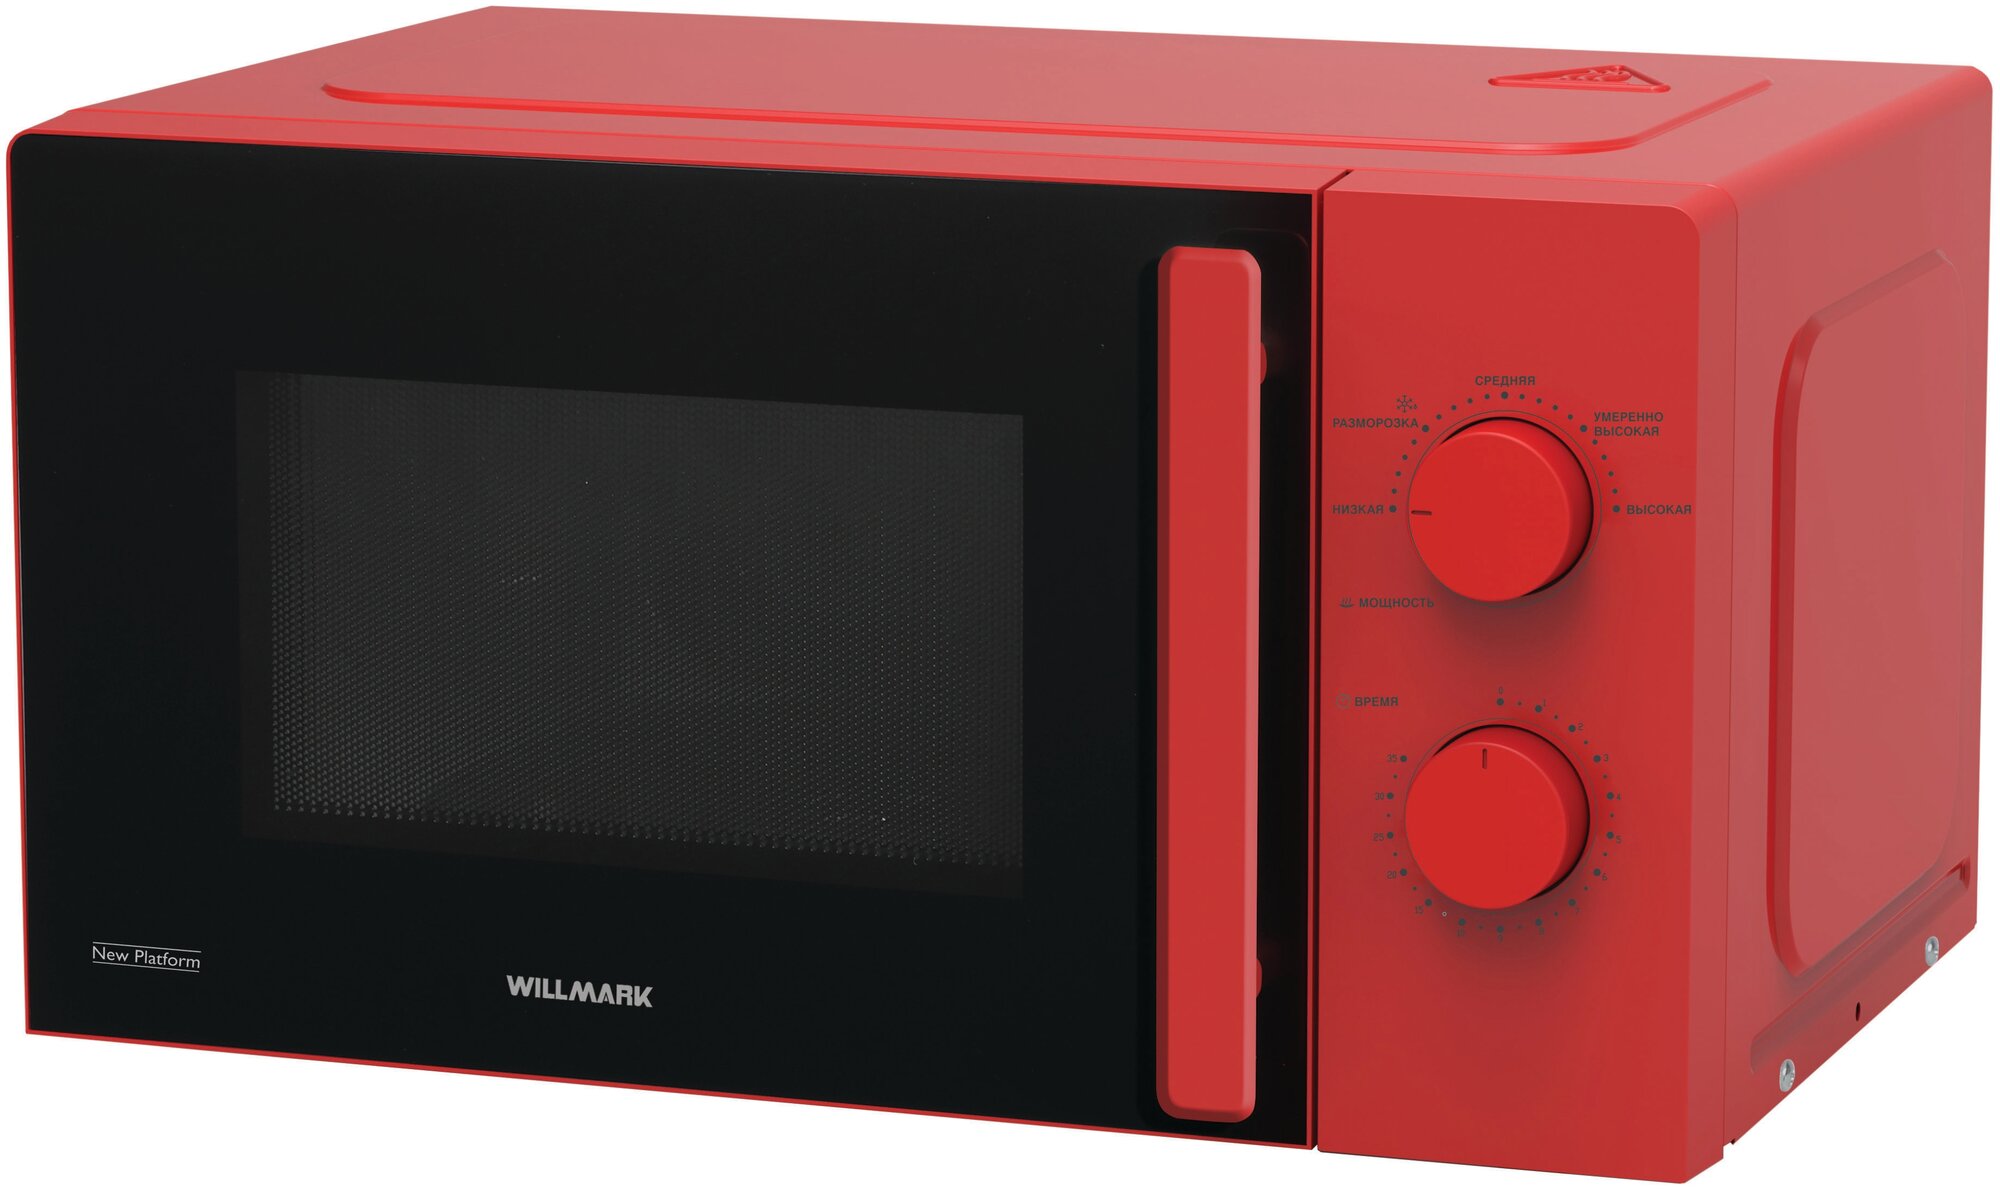 Микроволновая печь Willmark Wmo-270mcr (20л, 700Вт, механическая ПУ, ручка д/открыв. дверцы, красн.)